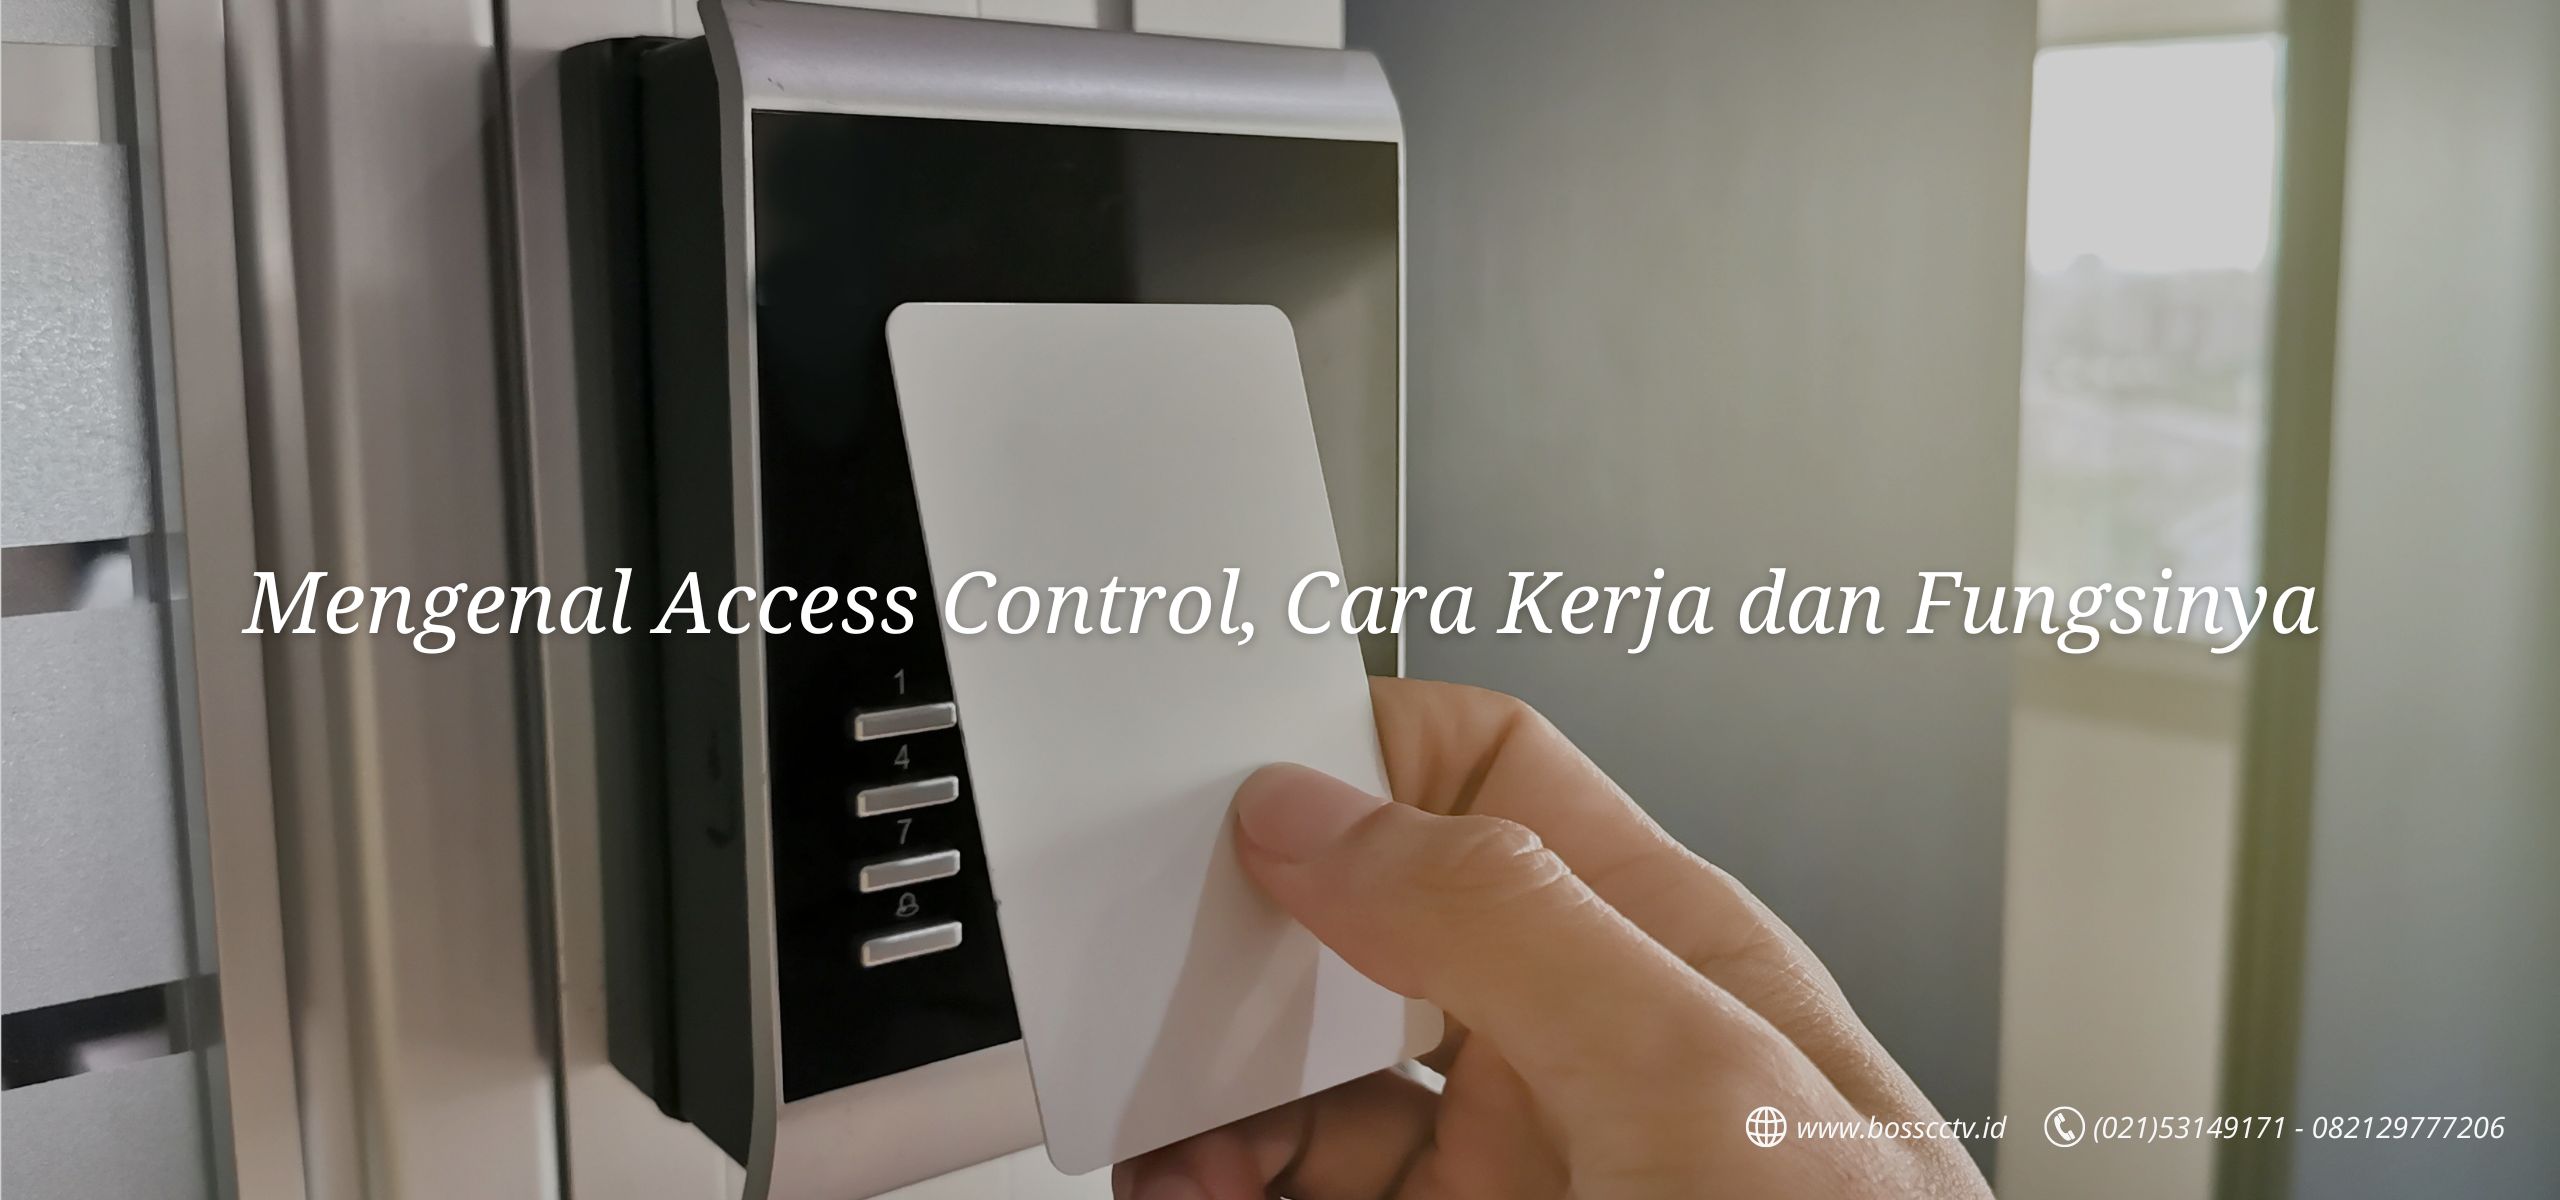 Mengenal Access Control, Cara Kerja dan Fungsinya.